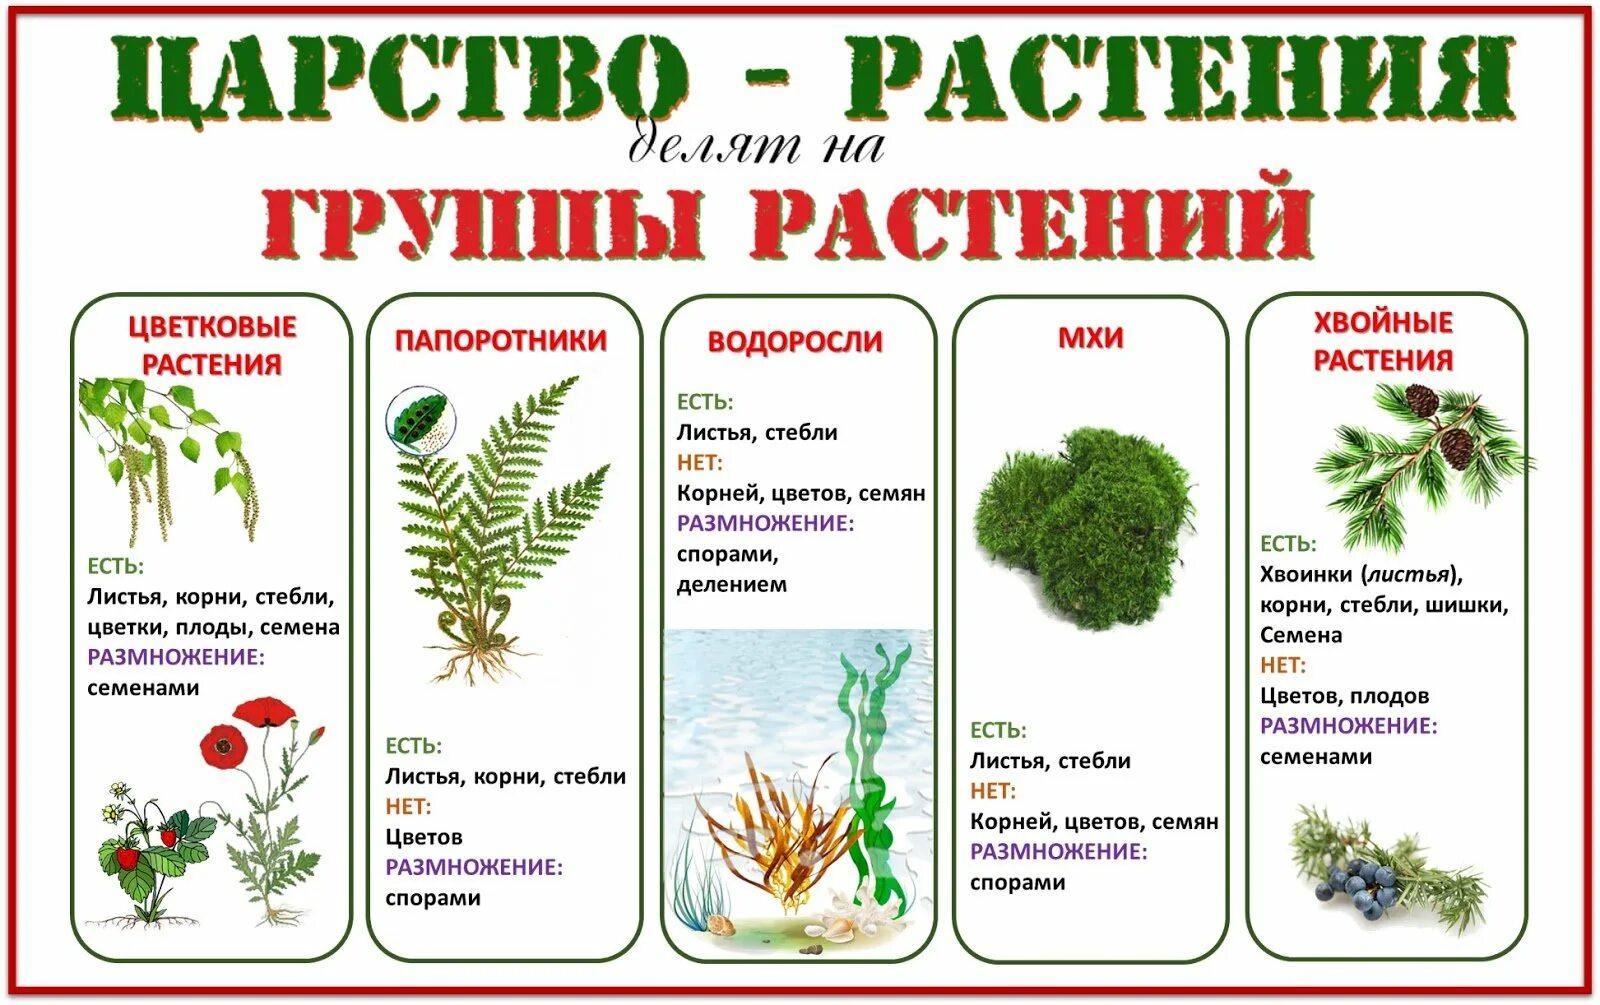 Группы растений. Деление растений на группы. Царство растений. Группы царства растений.